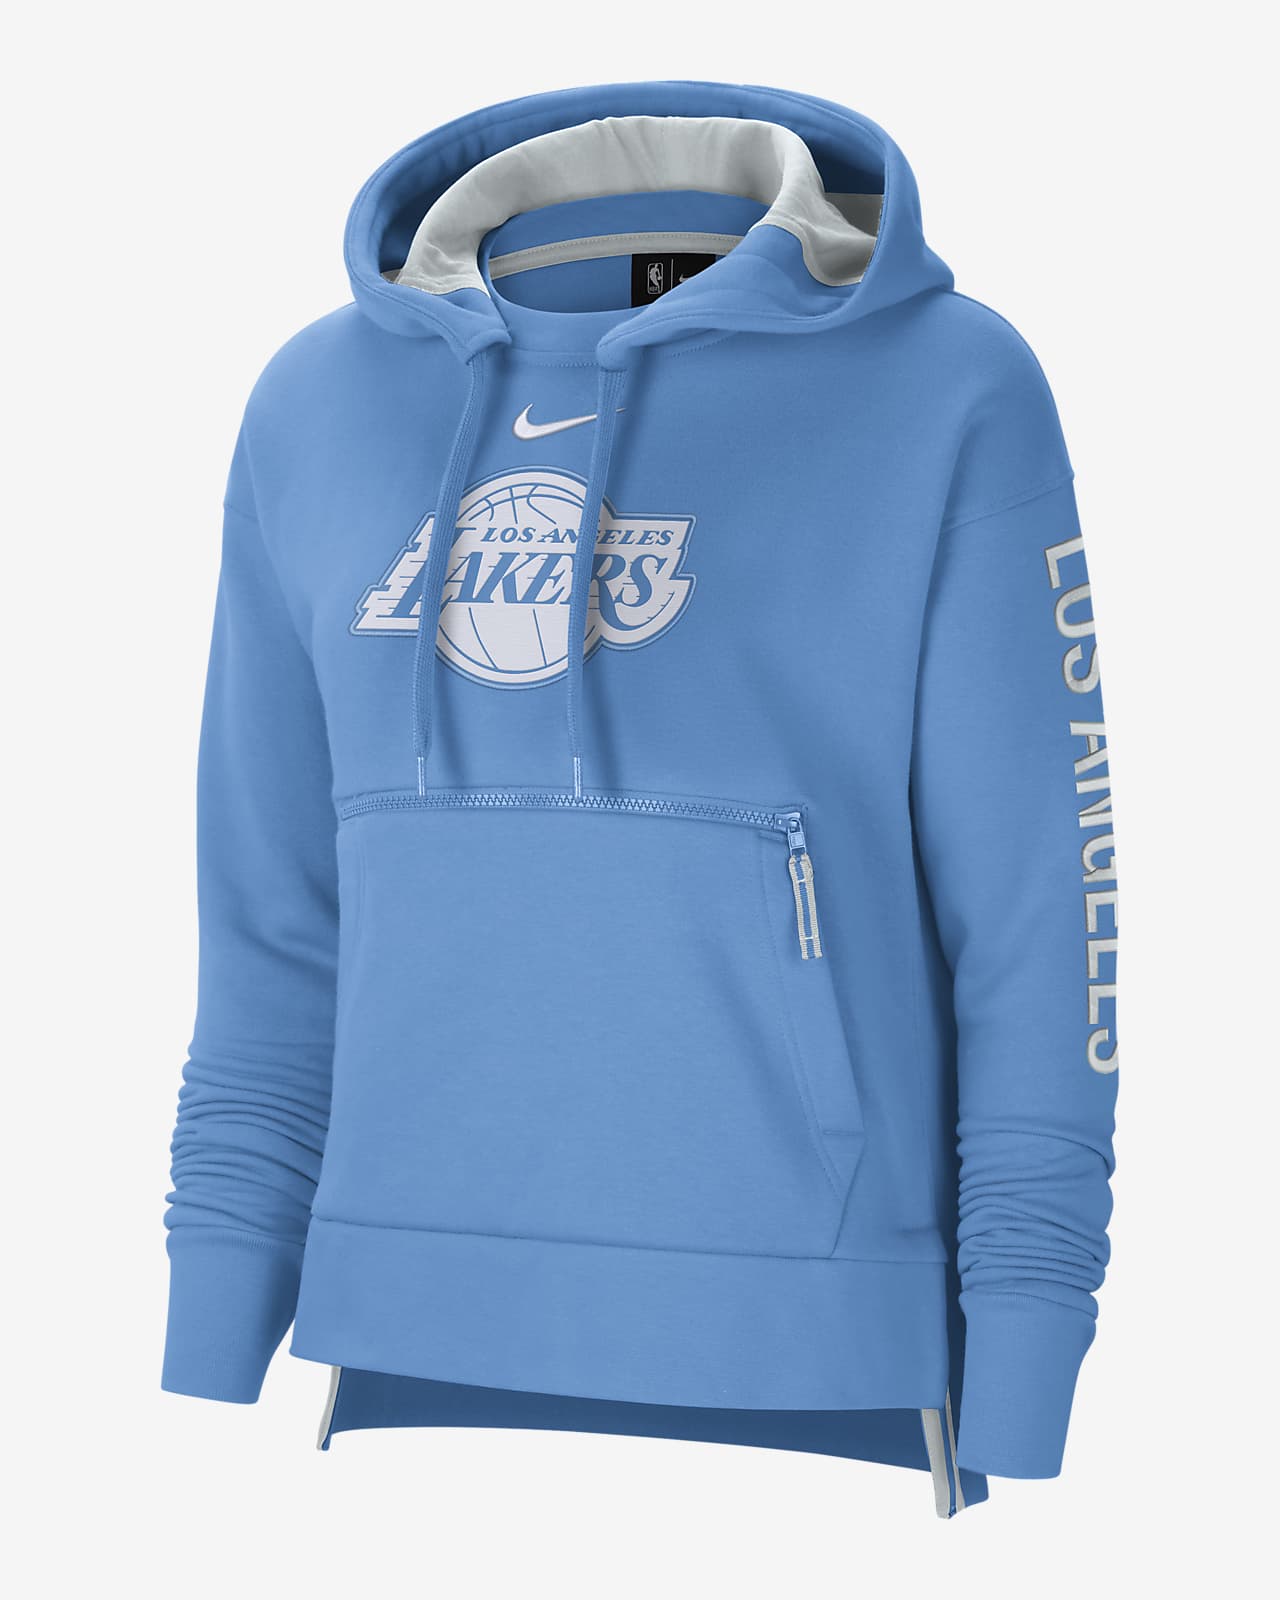 lakers city hoodie